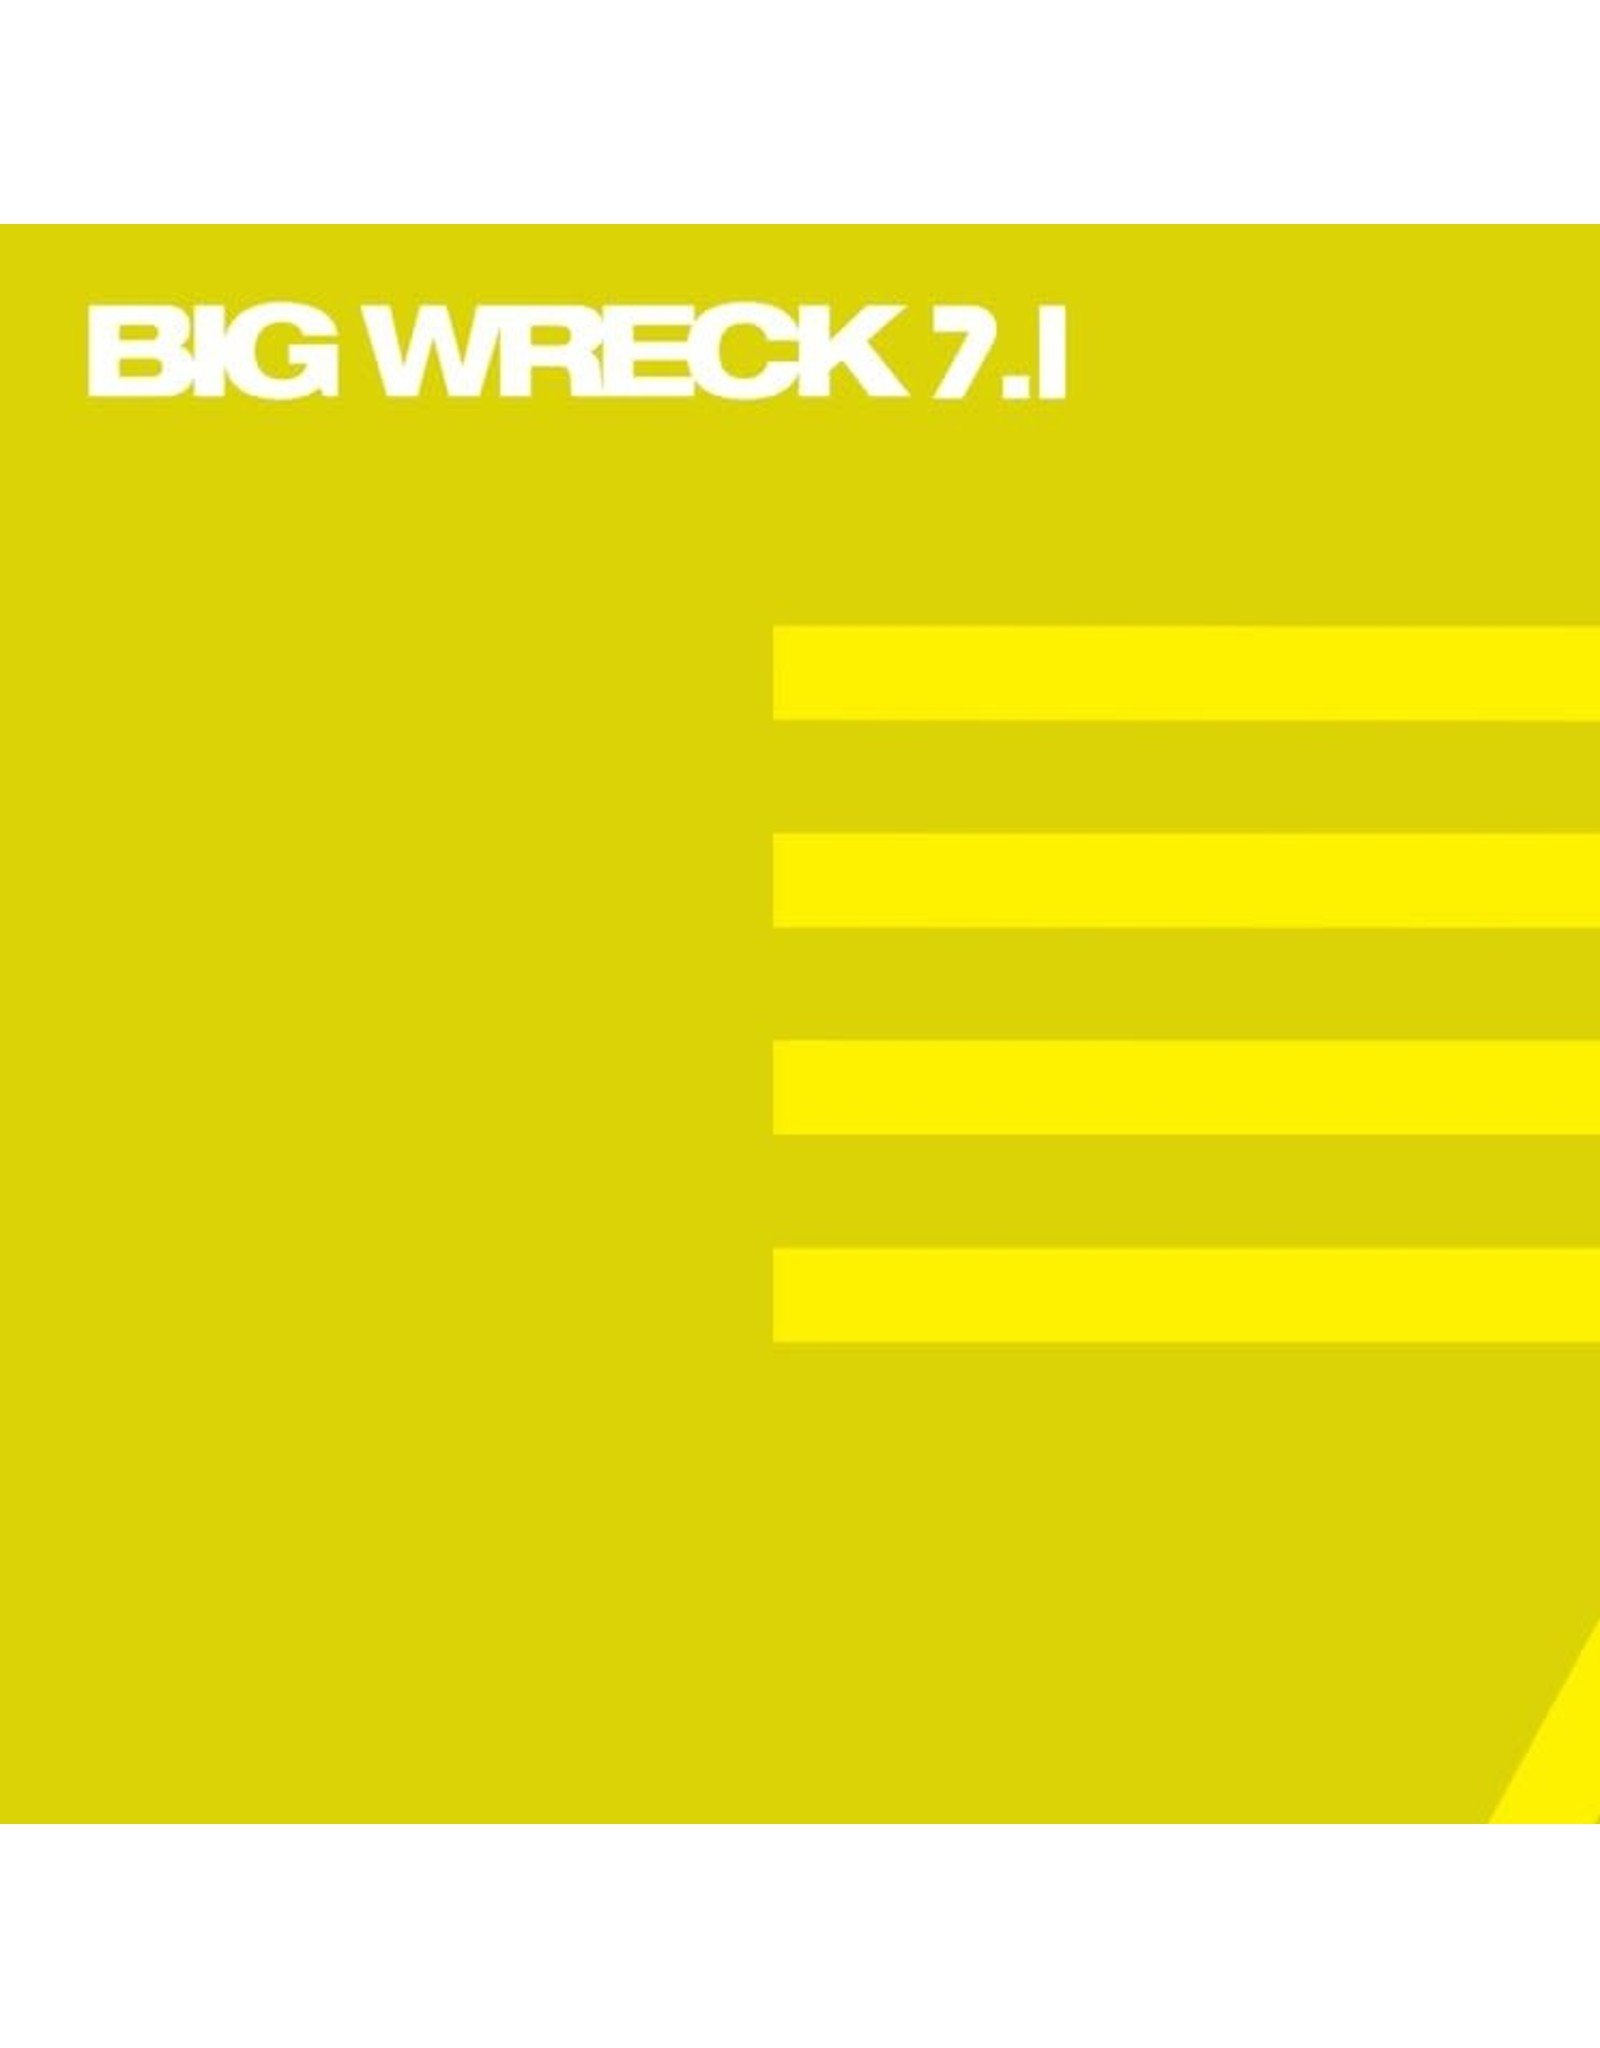 Big Wreck - 7.1 CD